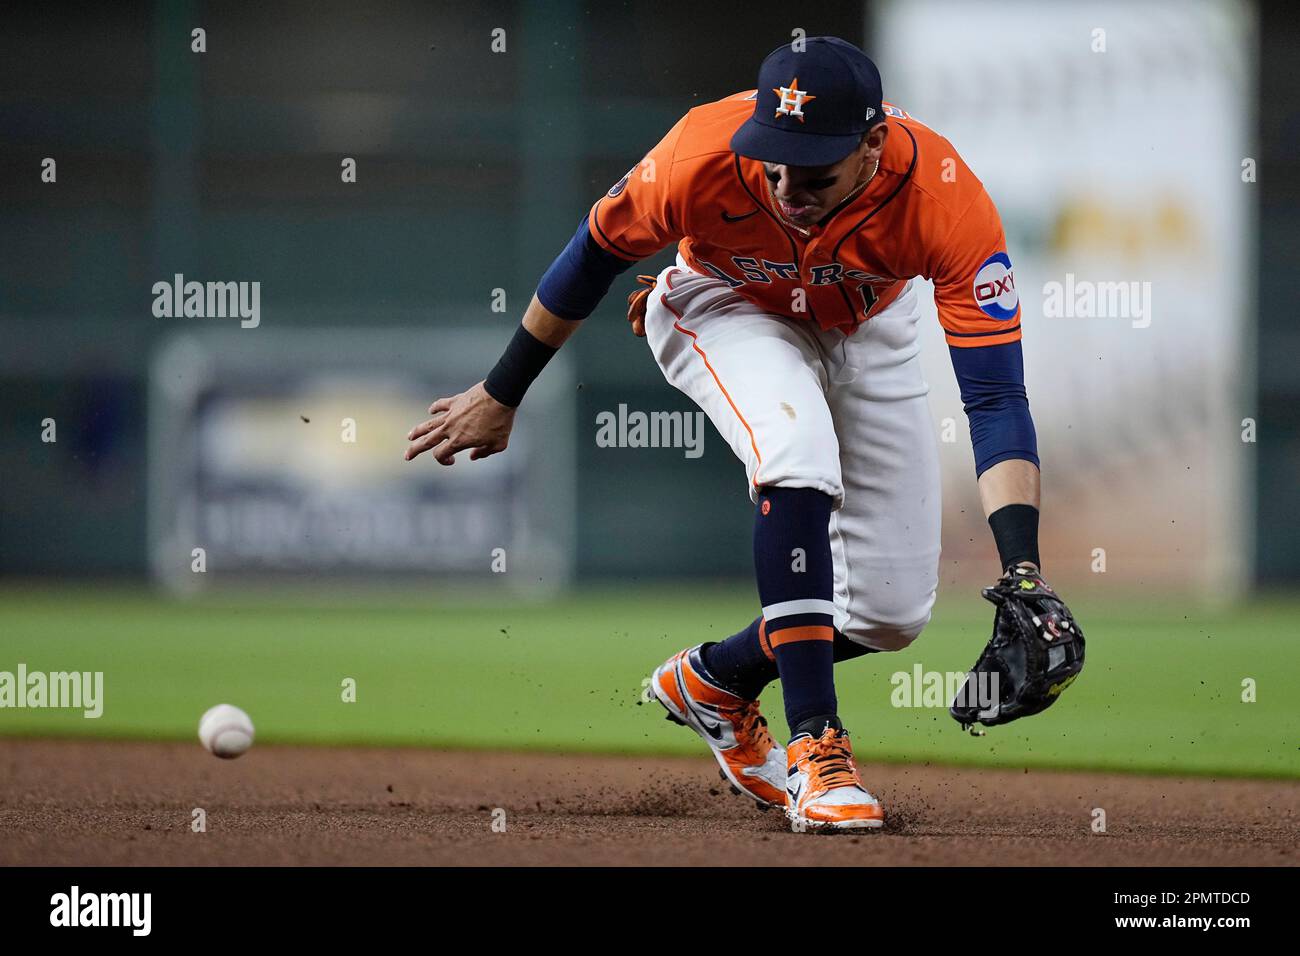 Houston Astros second baseman Mauricio Dubon fields a ground ball